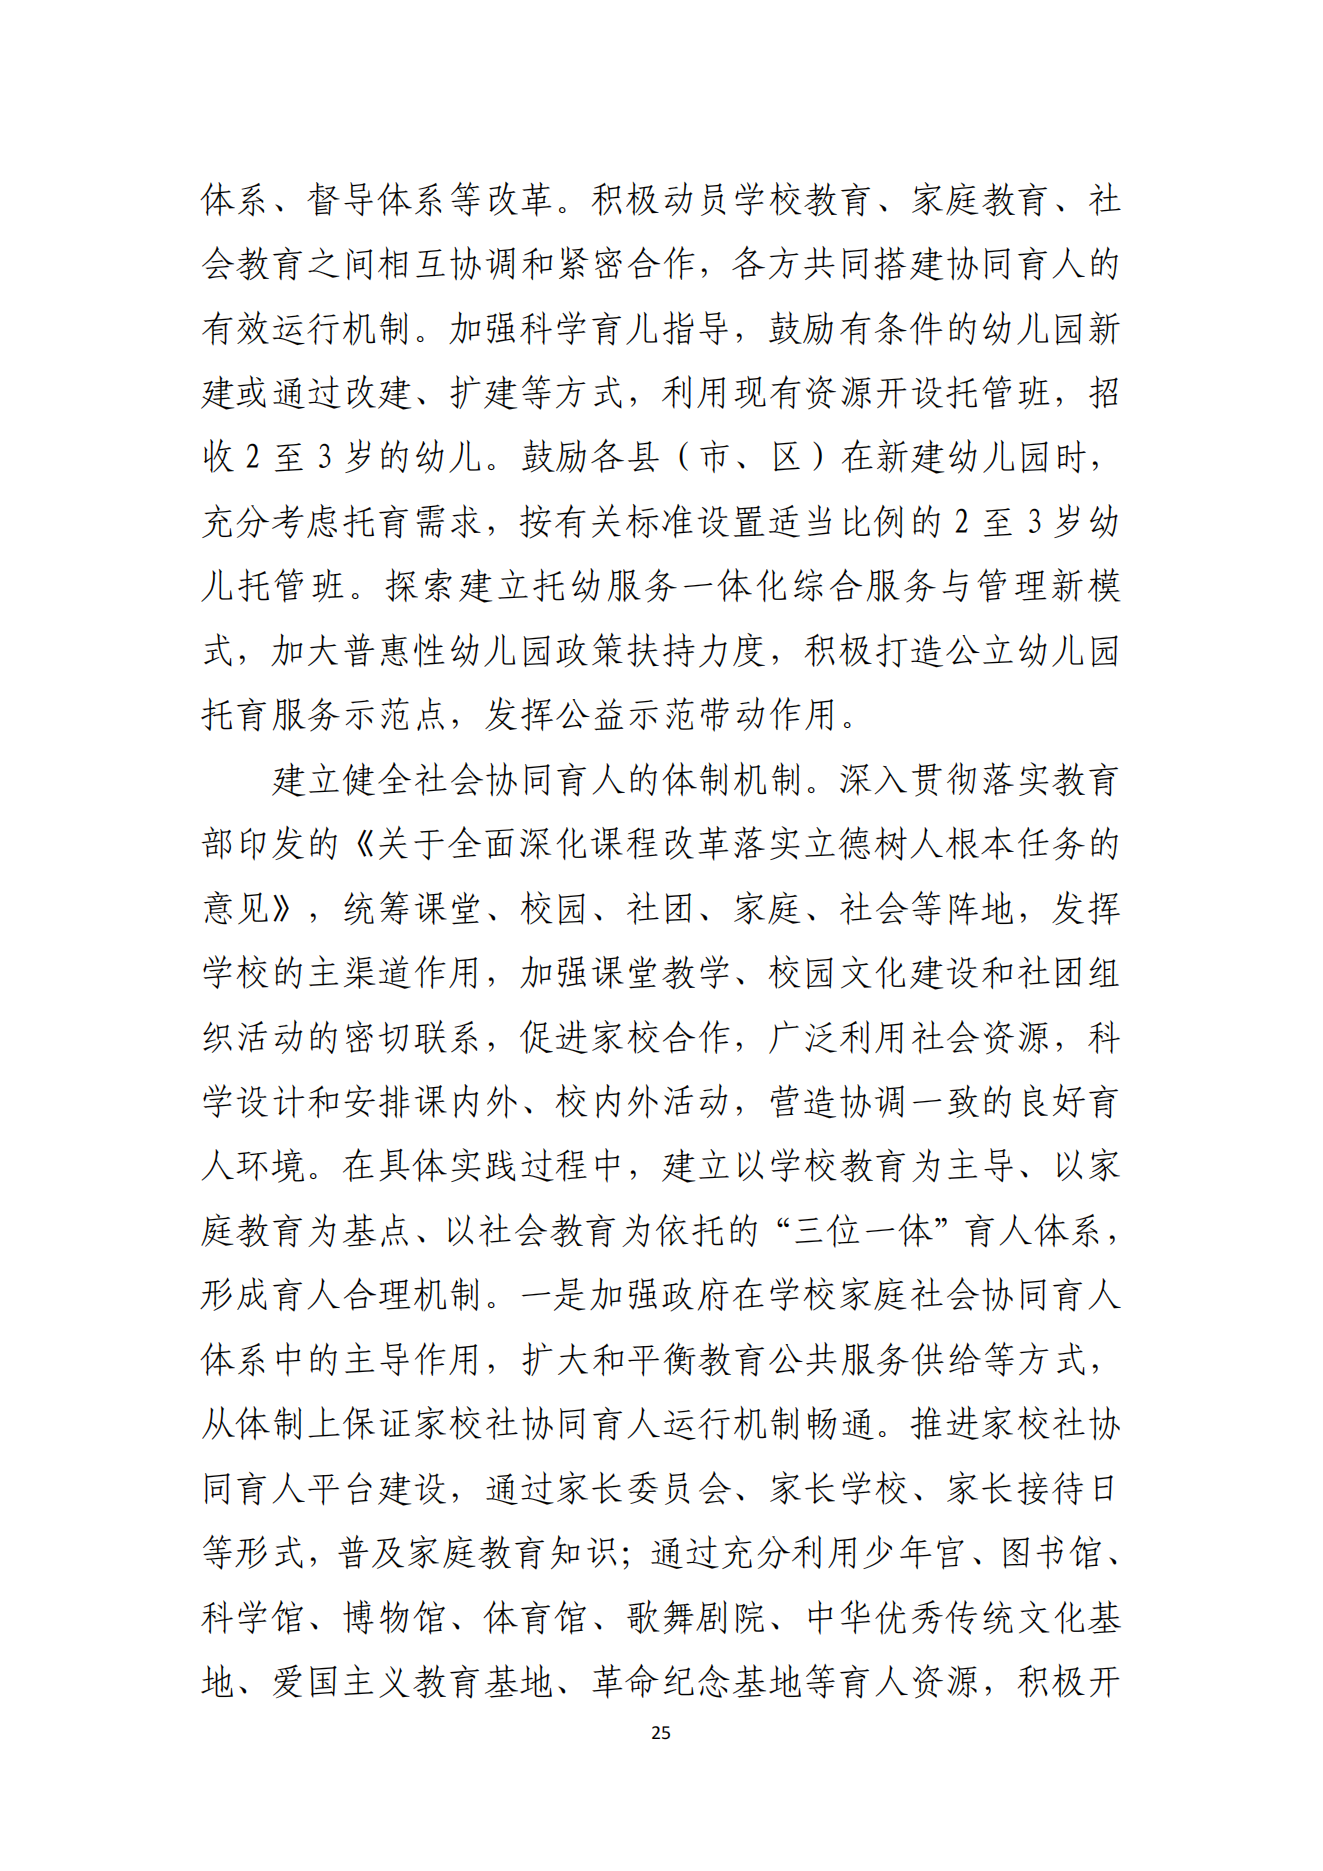 湛江市人民政府办公室关于印发湛江市教育发展“十四五”规划的通知_24.png